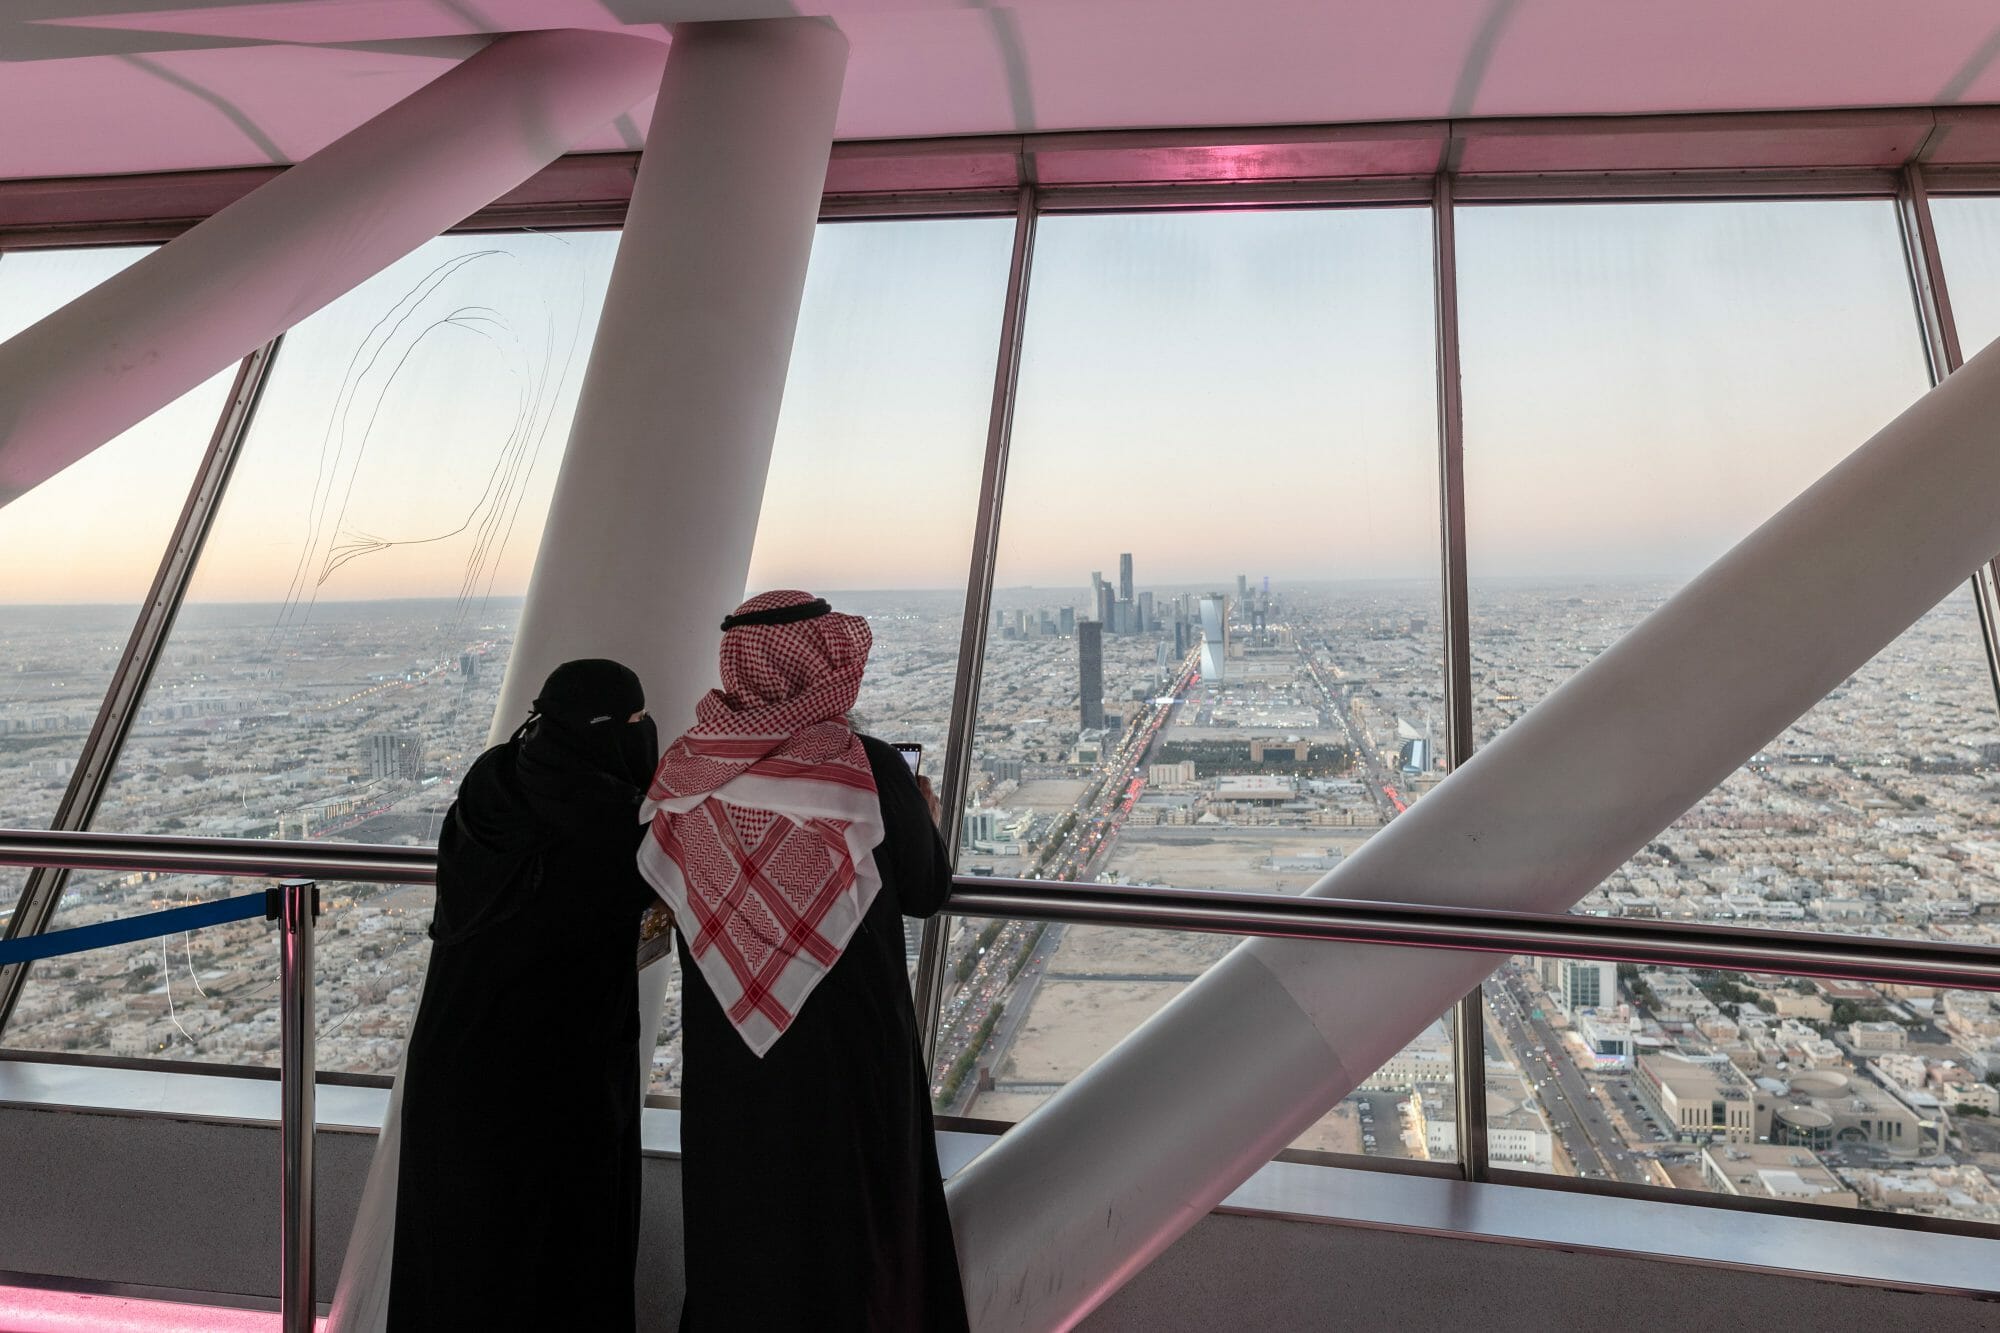 بداية صعبة لمسعى السعودية اقناع المغتربين بترك دبي والذهاب الى الرياض watanserb.com